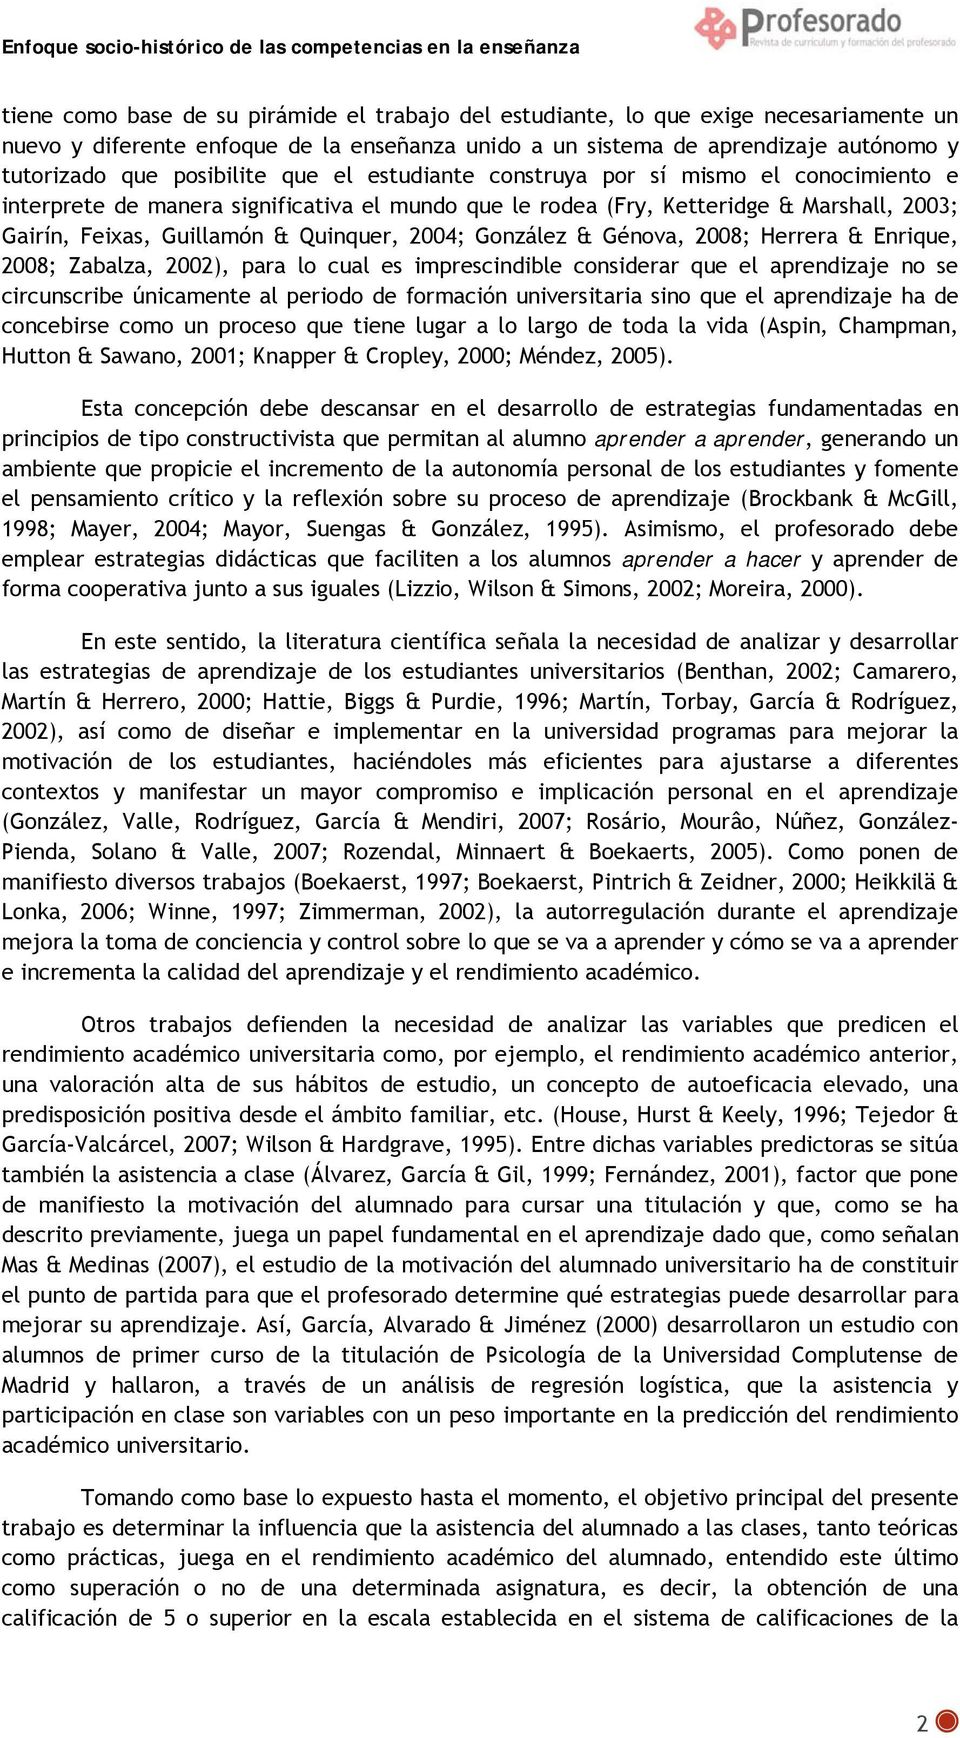 2004; González & Génova, 2008; Herrera & Enrique, 2008; Zabalza, 2002), para lo cual es imprescindible considerar que el aprendizaje no se circunscribe únicamente al periodo de formación